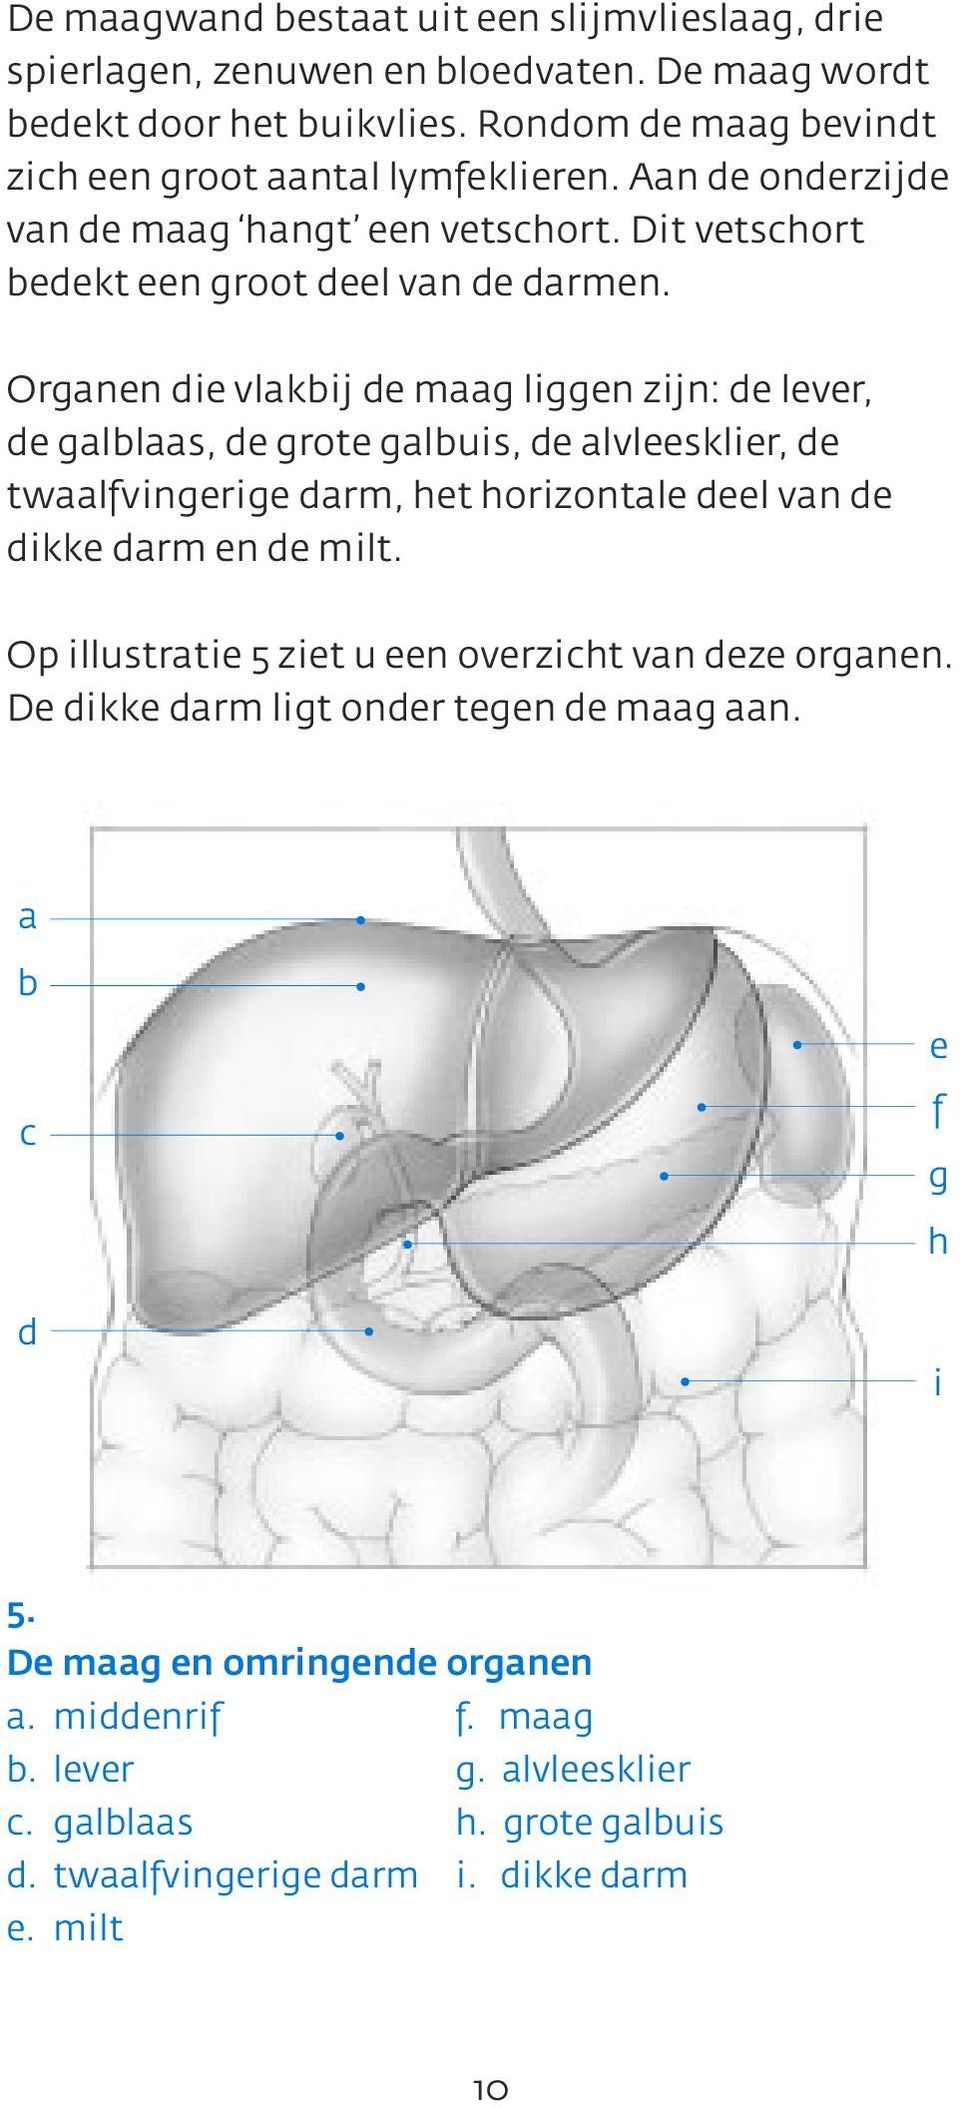 Organen die vlakbij de maag liggen zijn: de lever, de galblaas, de grote galbuis, de alvleesklier, de twaalfvingerige darm, het horizontale deel van de dikke darm en de milt.